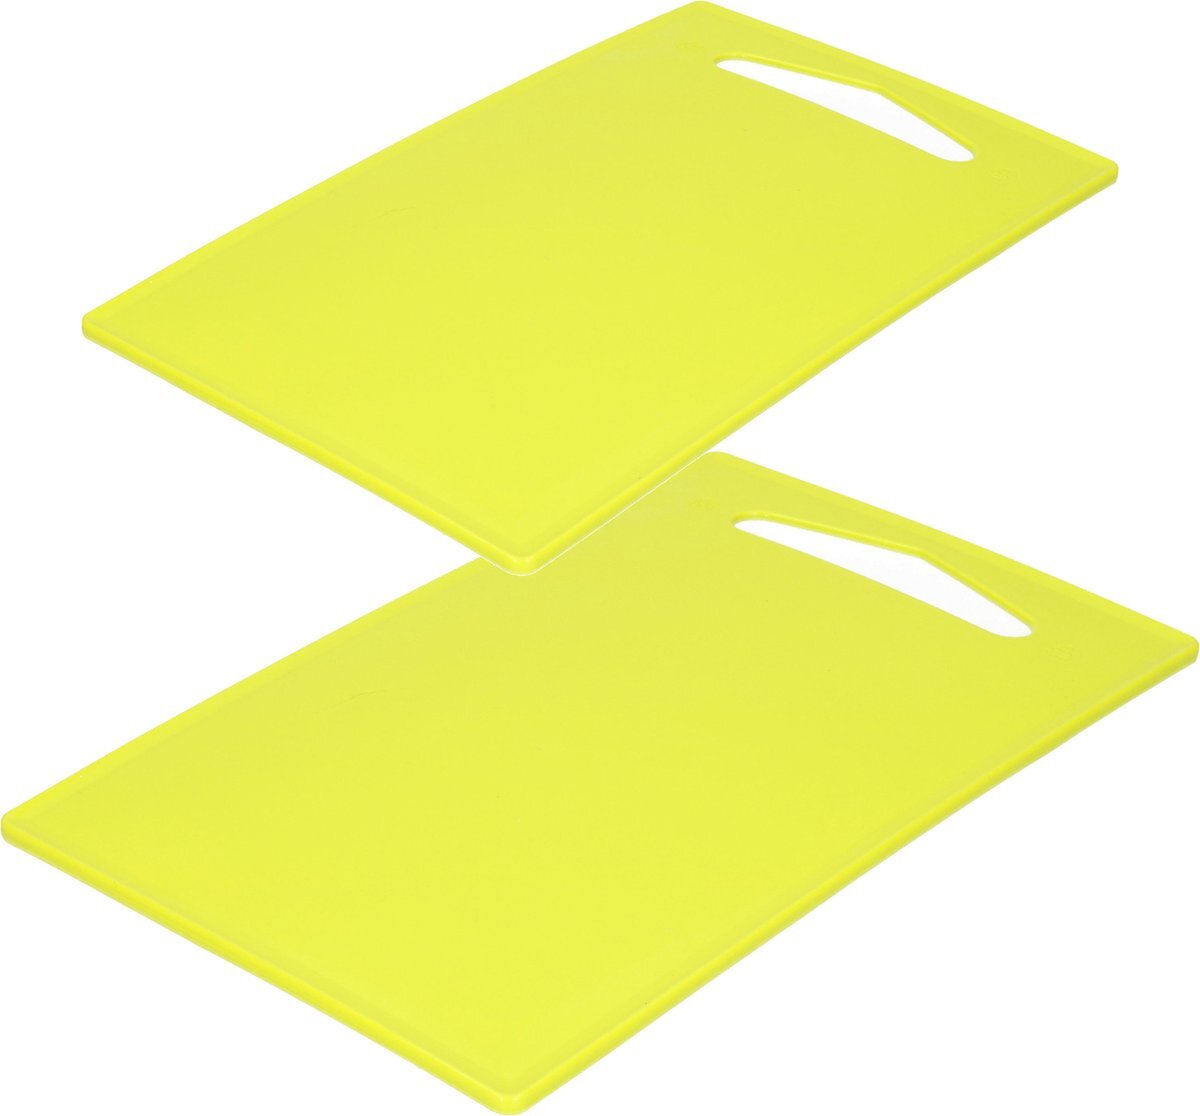 Forte Plastics Kunststof snijplanken set van 2x stuks lime groen 27 x 16 en 36 x 24 cm - Keuken/koken accessoires